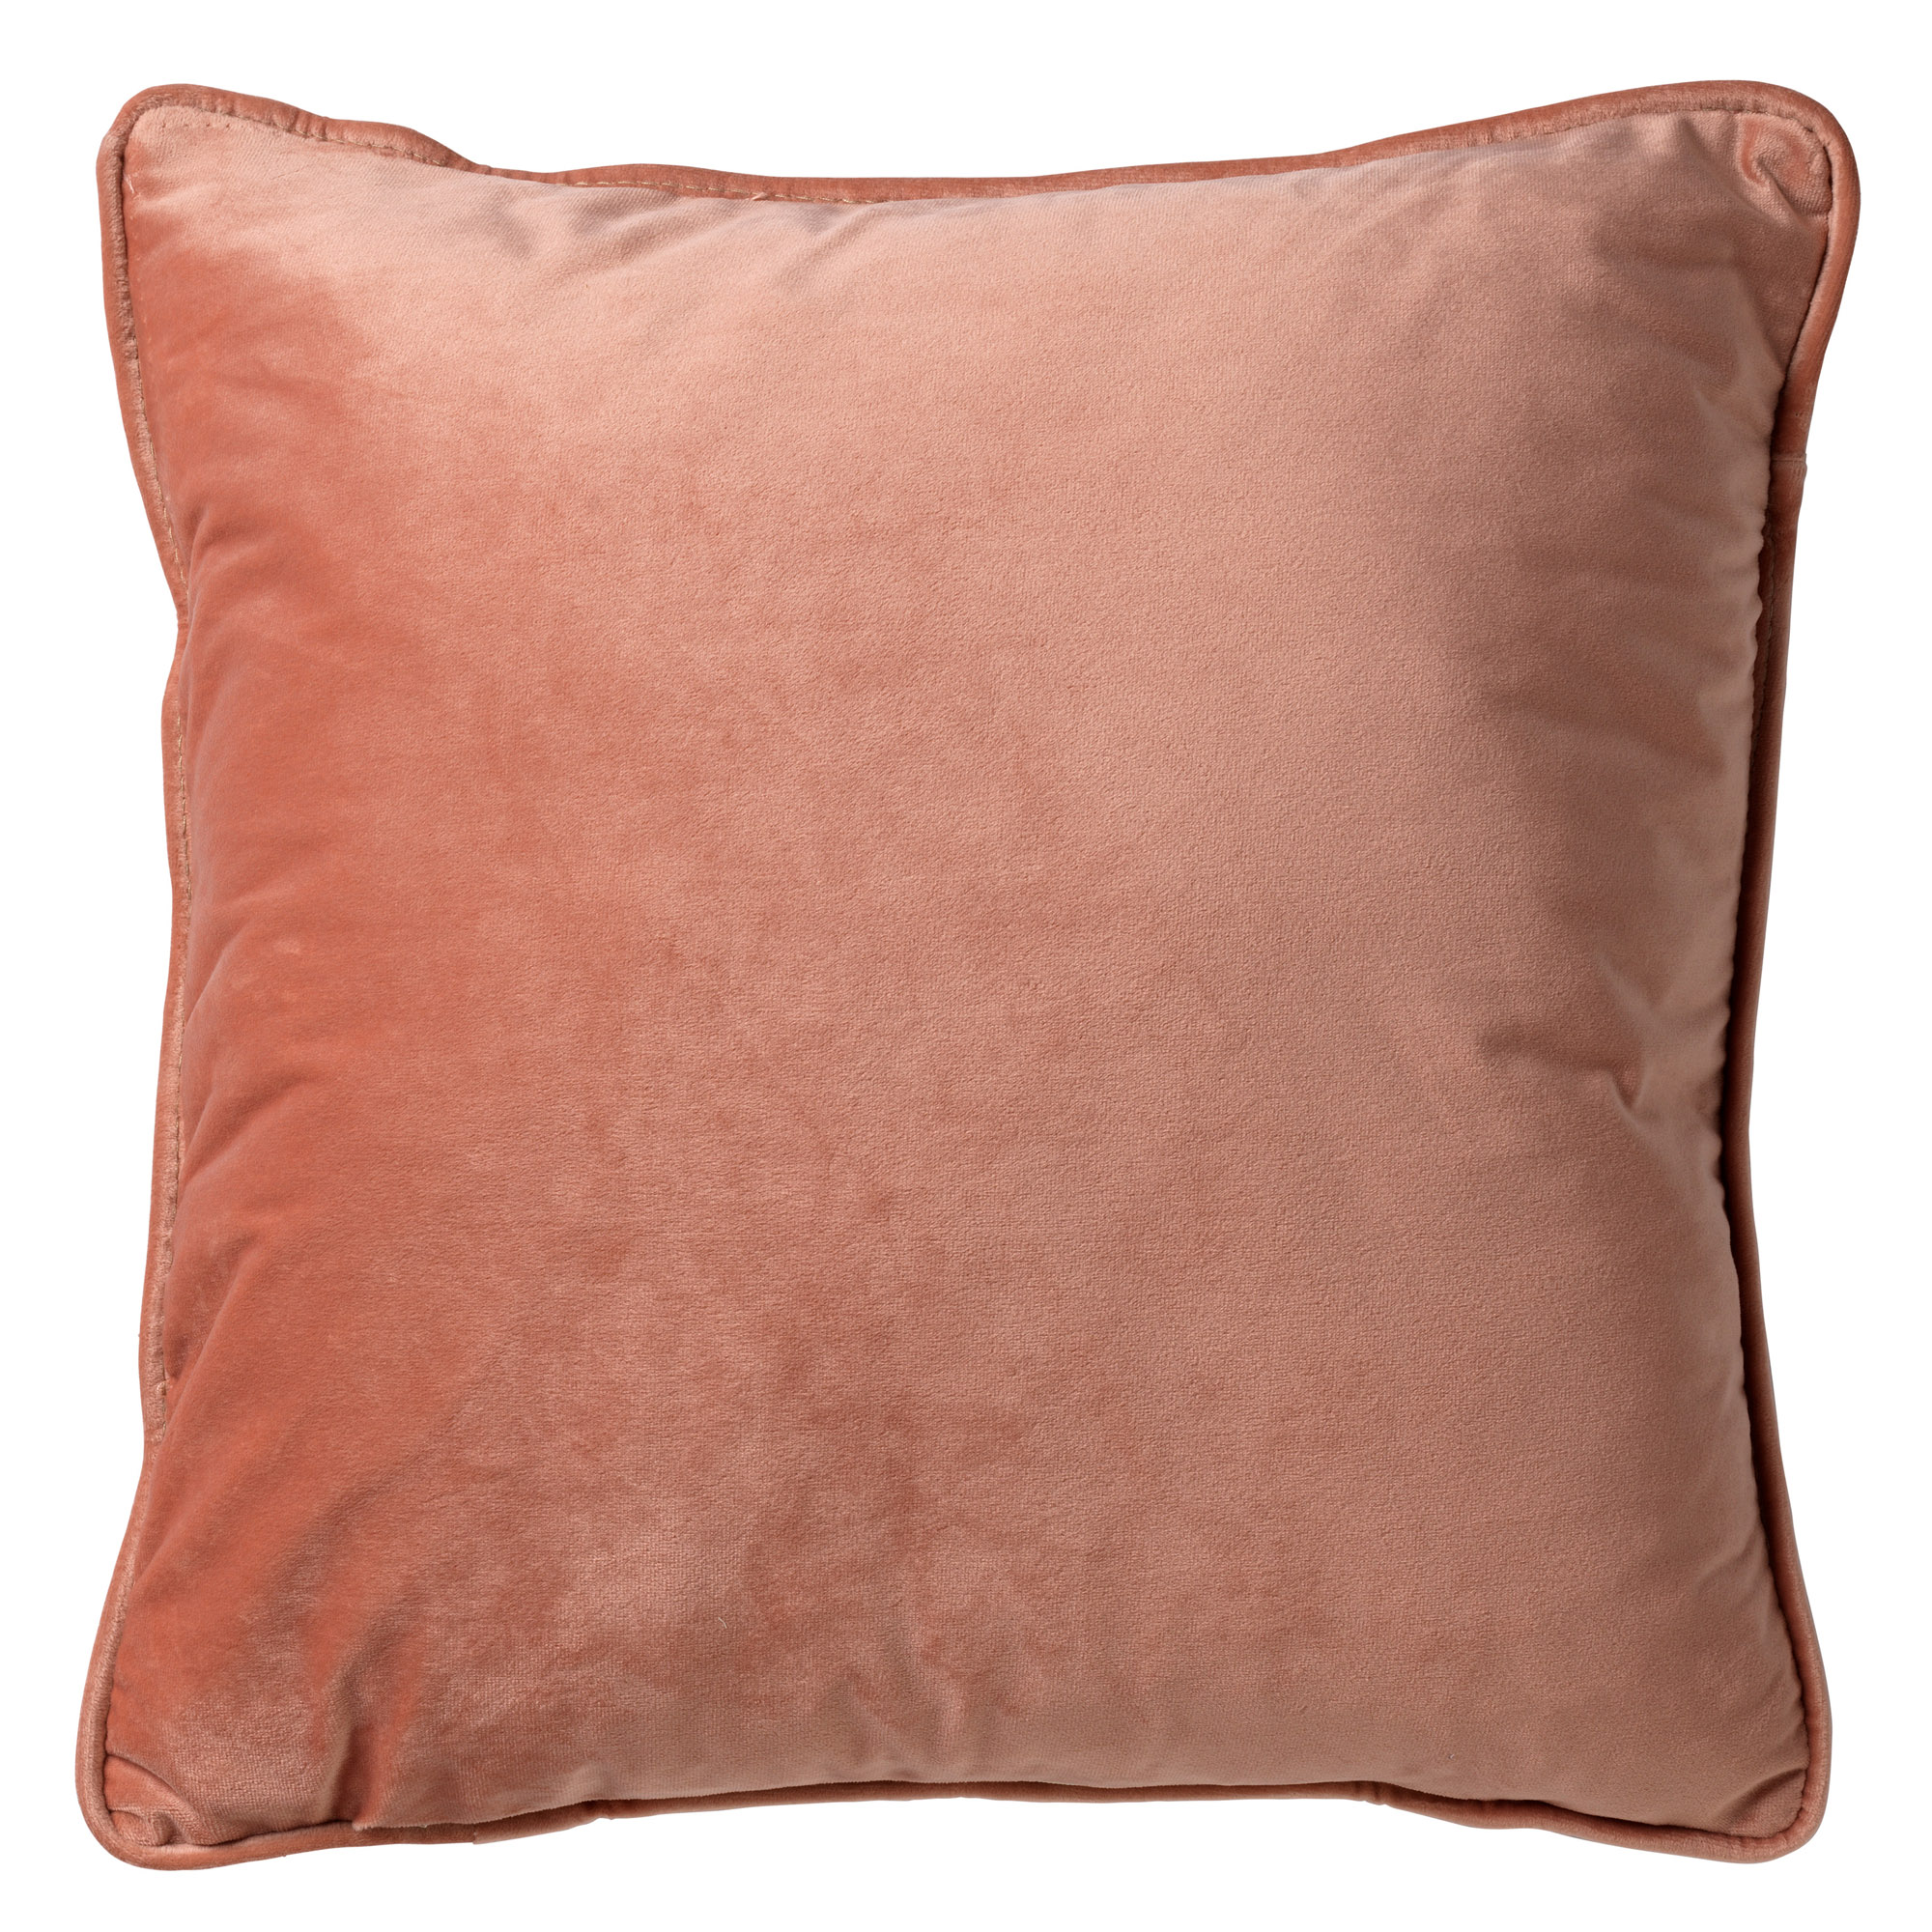 FINN - Cushion 45x45 cm Muted Clay - pink